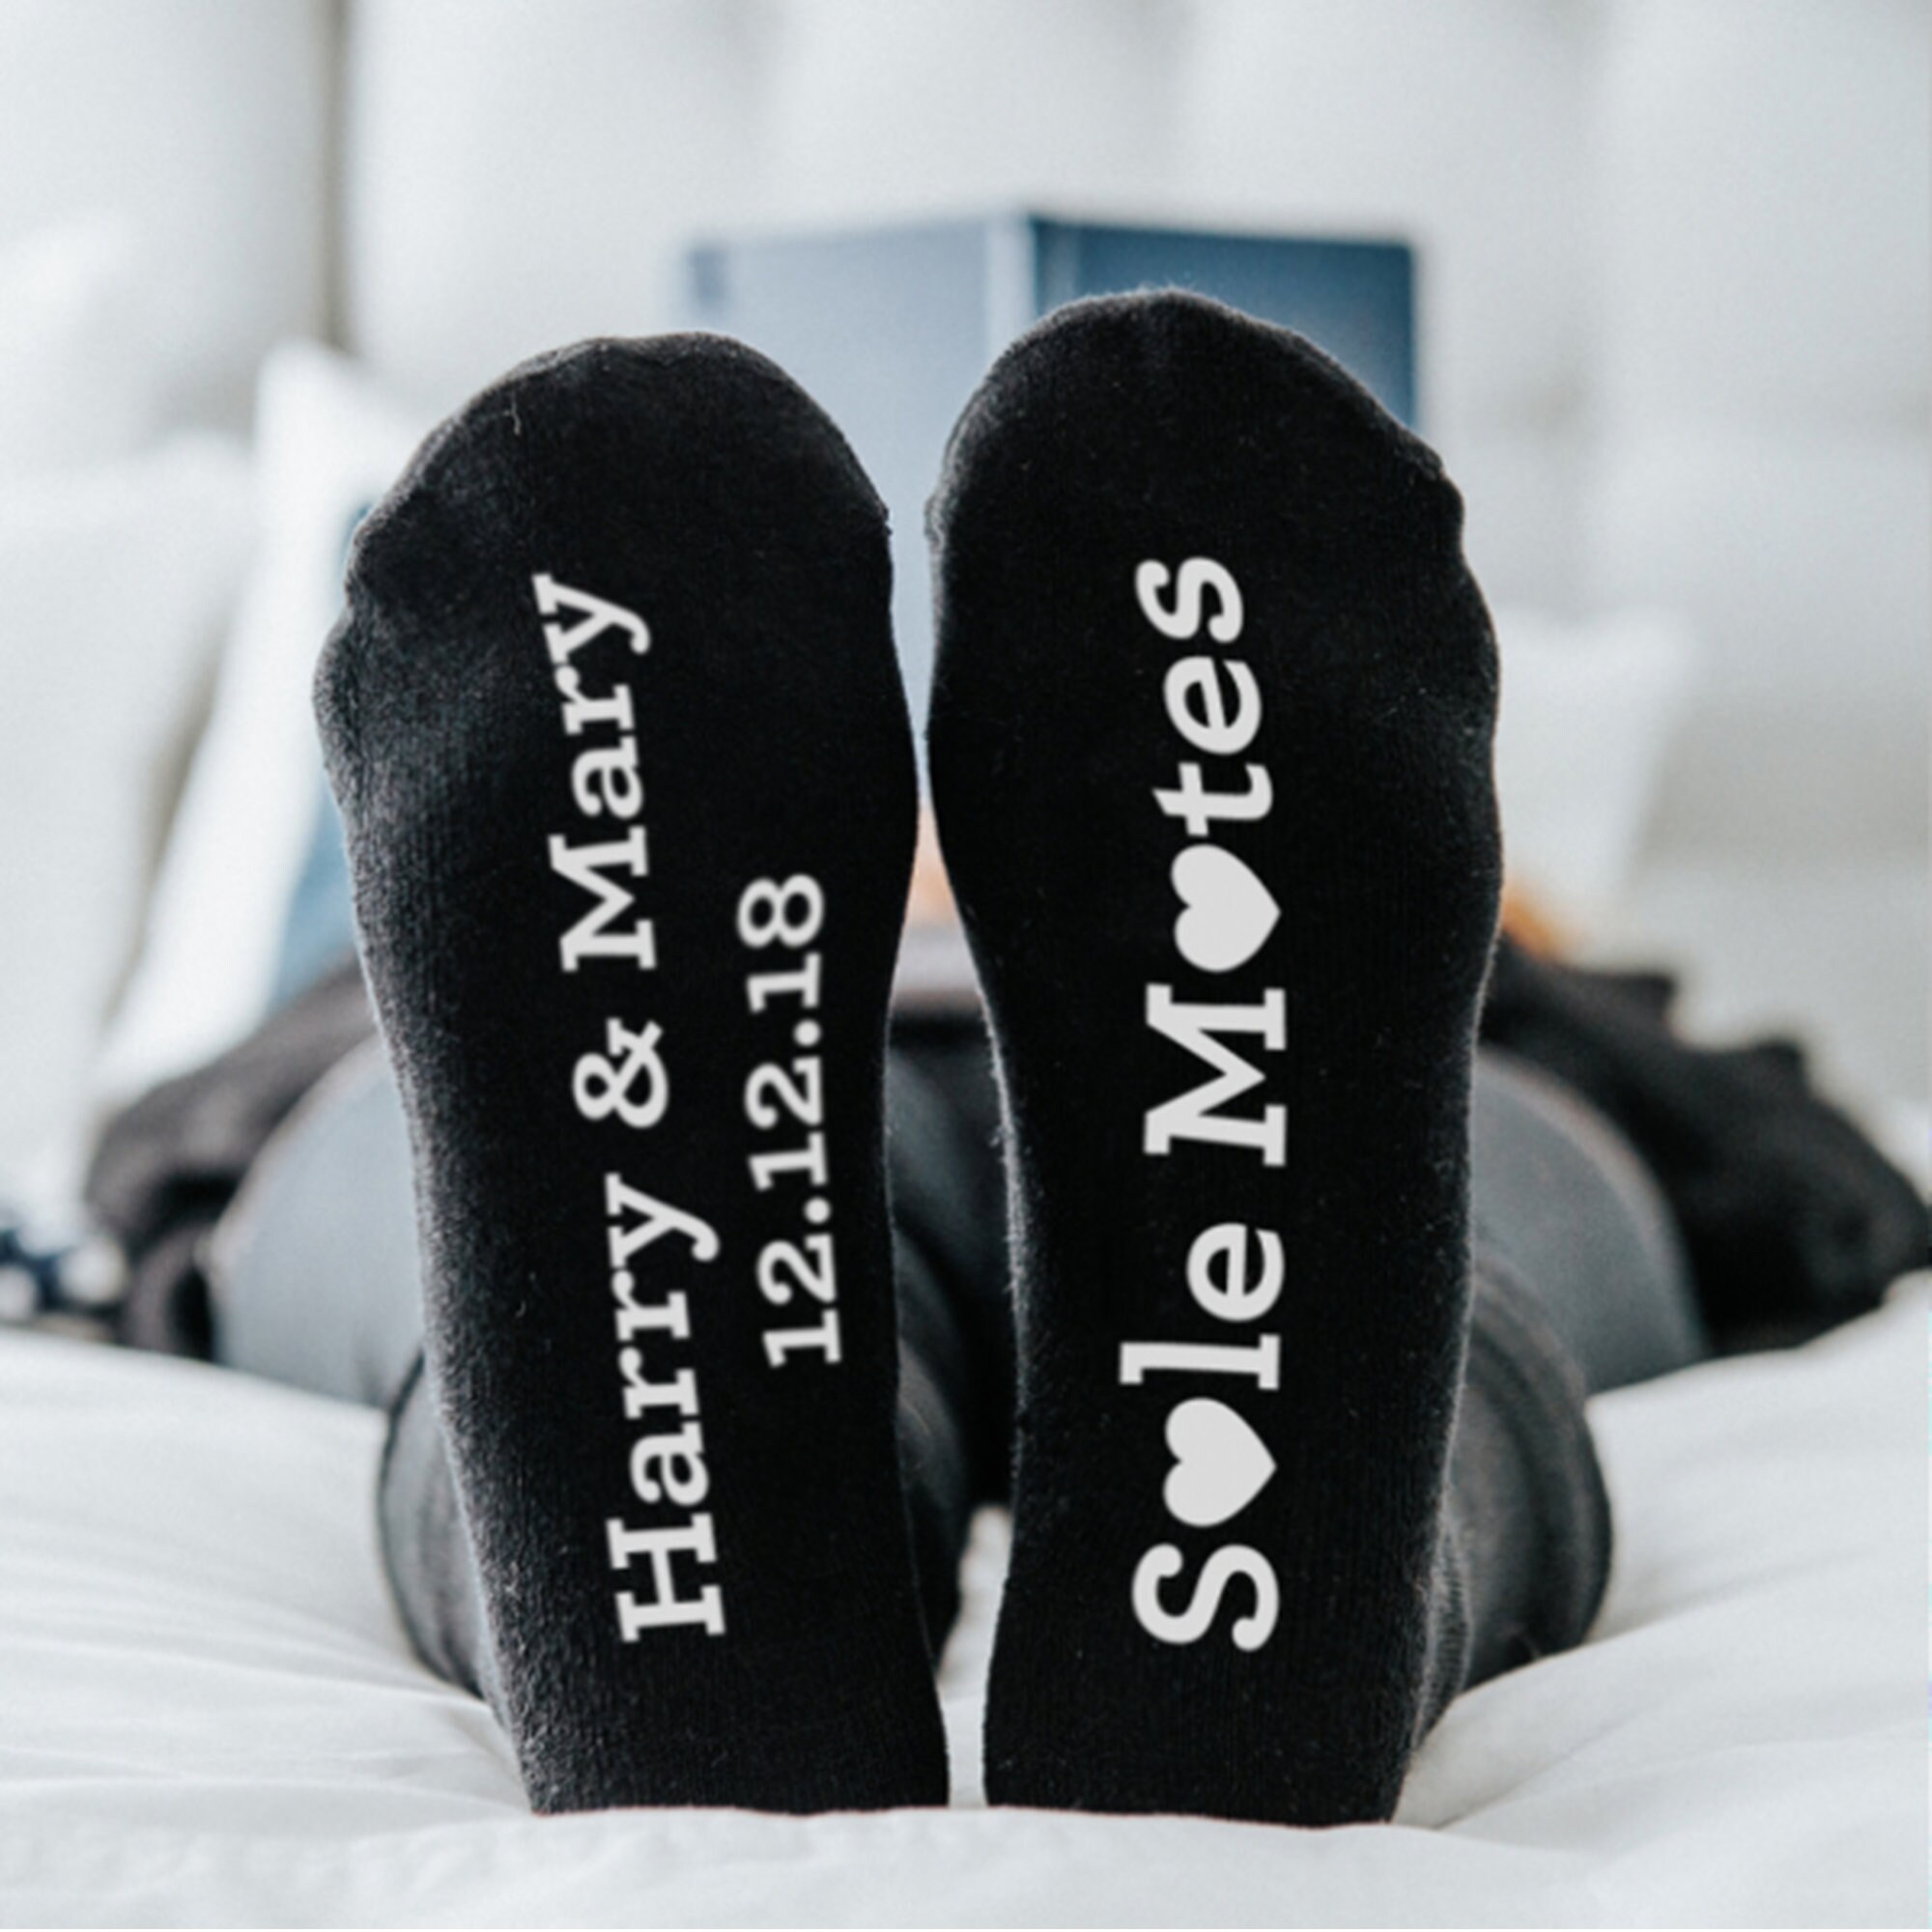 PERSONALISED SOLE MATE Black Socks | Etsy